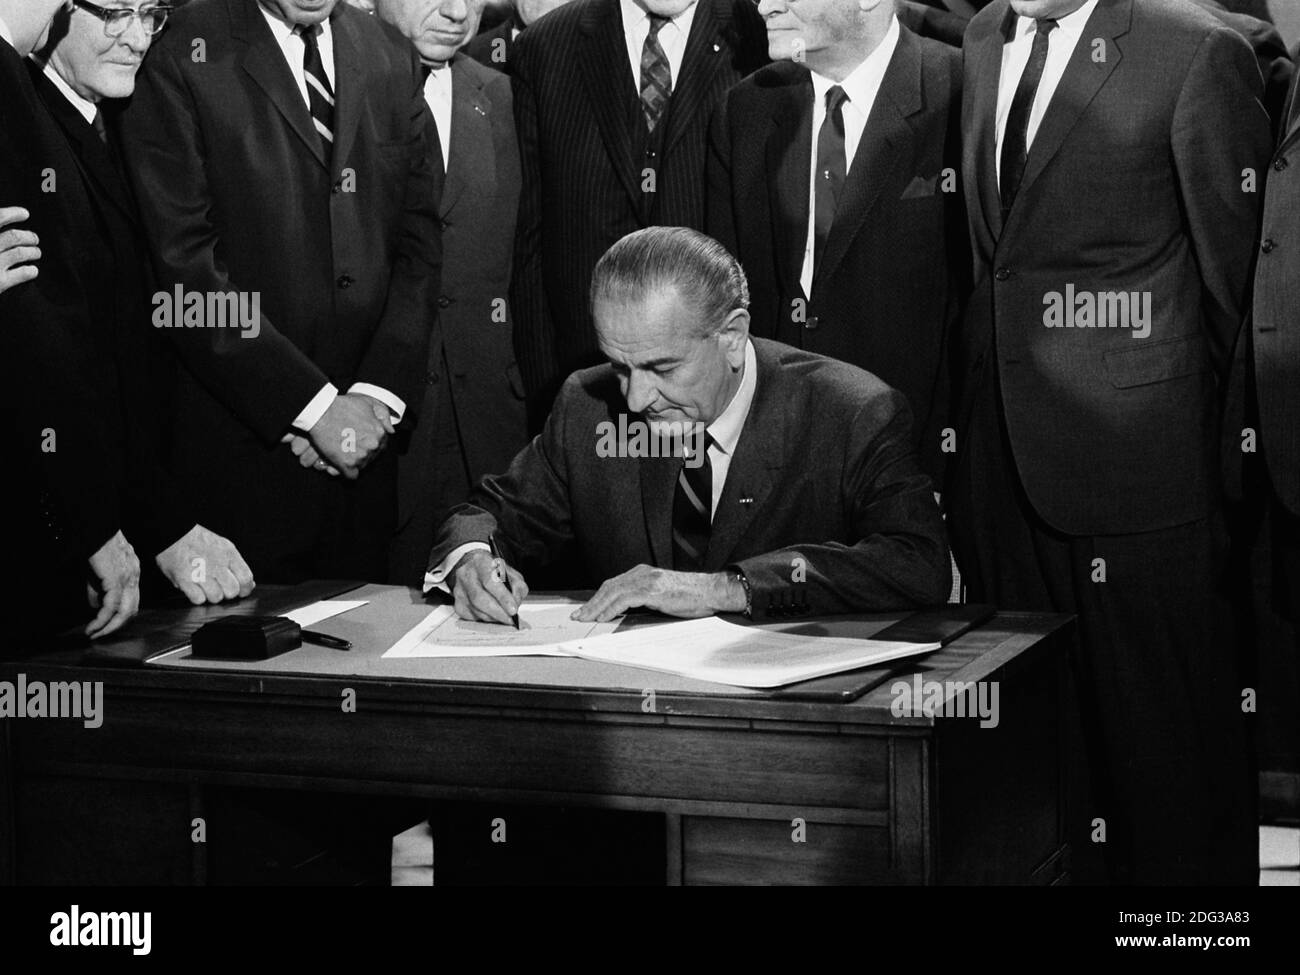 El Presidente de los Estados Unidos, Lyndon Johnson, firmó un proyecto de ley de derechos civiles mientras estaba rodeado por miembros del Congreso, Washington, D.C., EE.UU., Warren K. Leffler, 11 de abril de 1968 Foto de stock